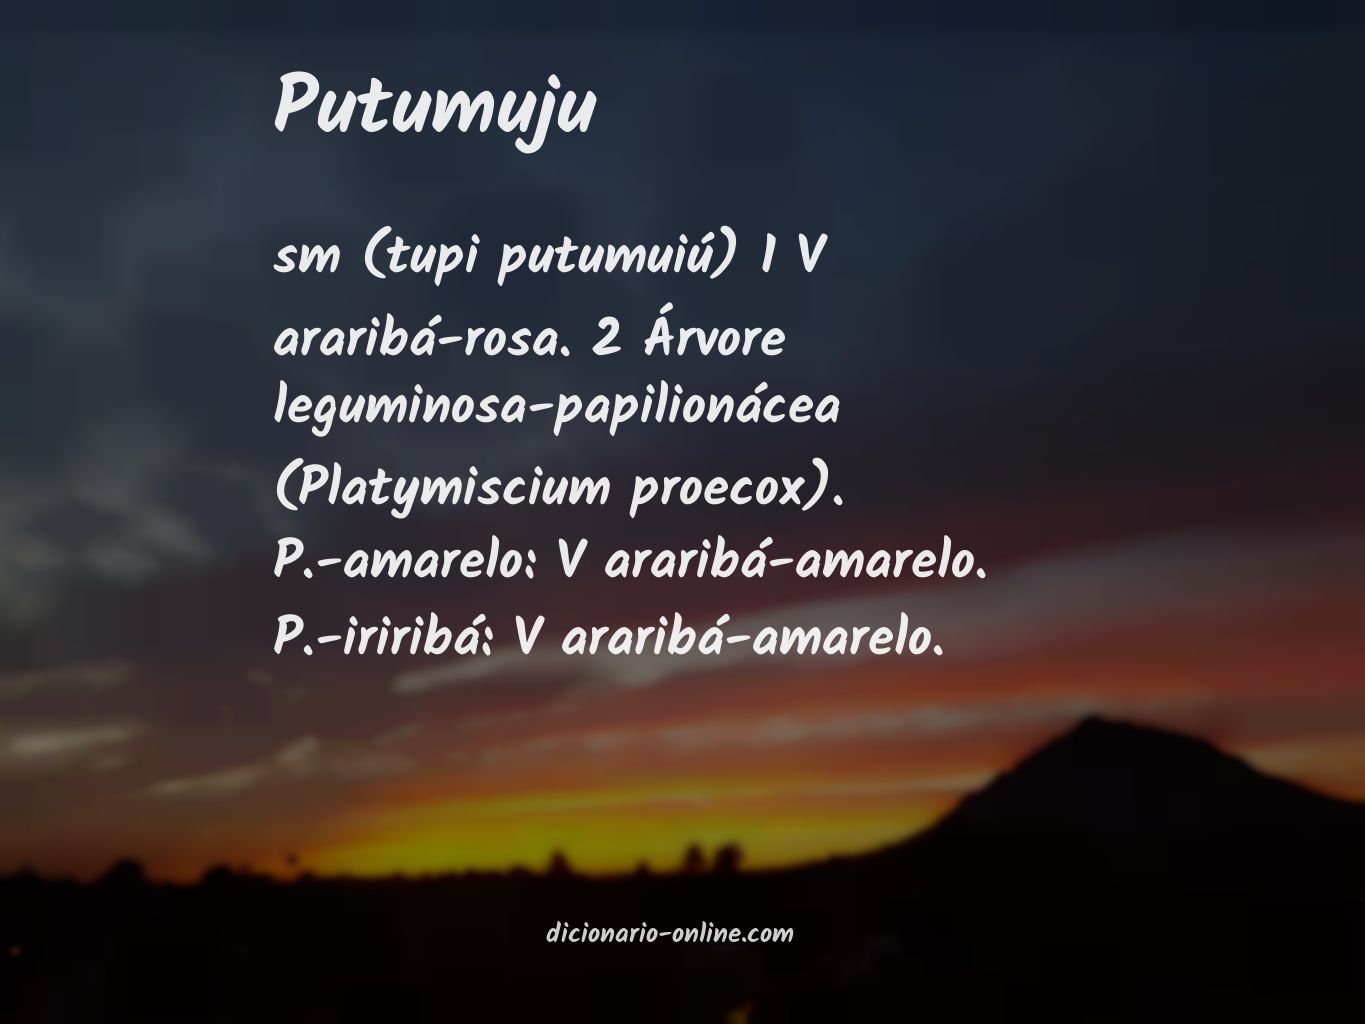 Significado de putumuju